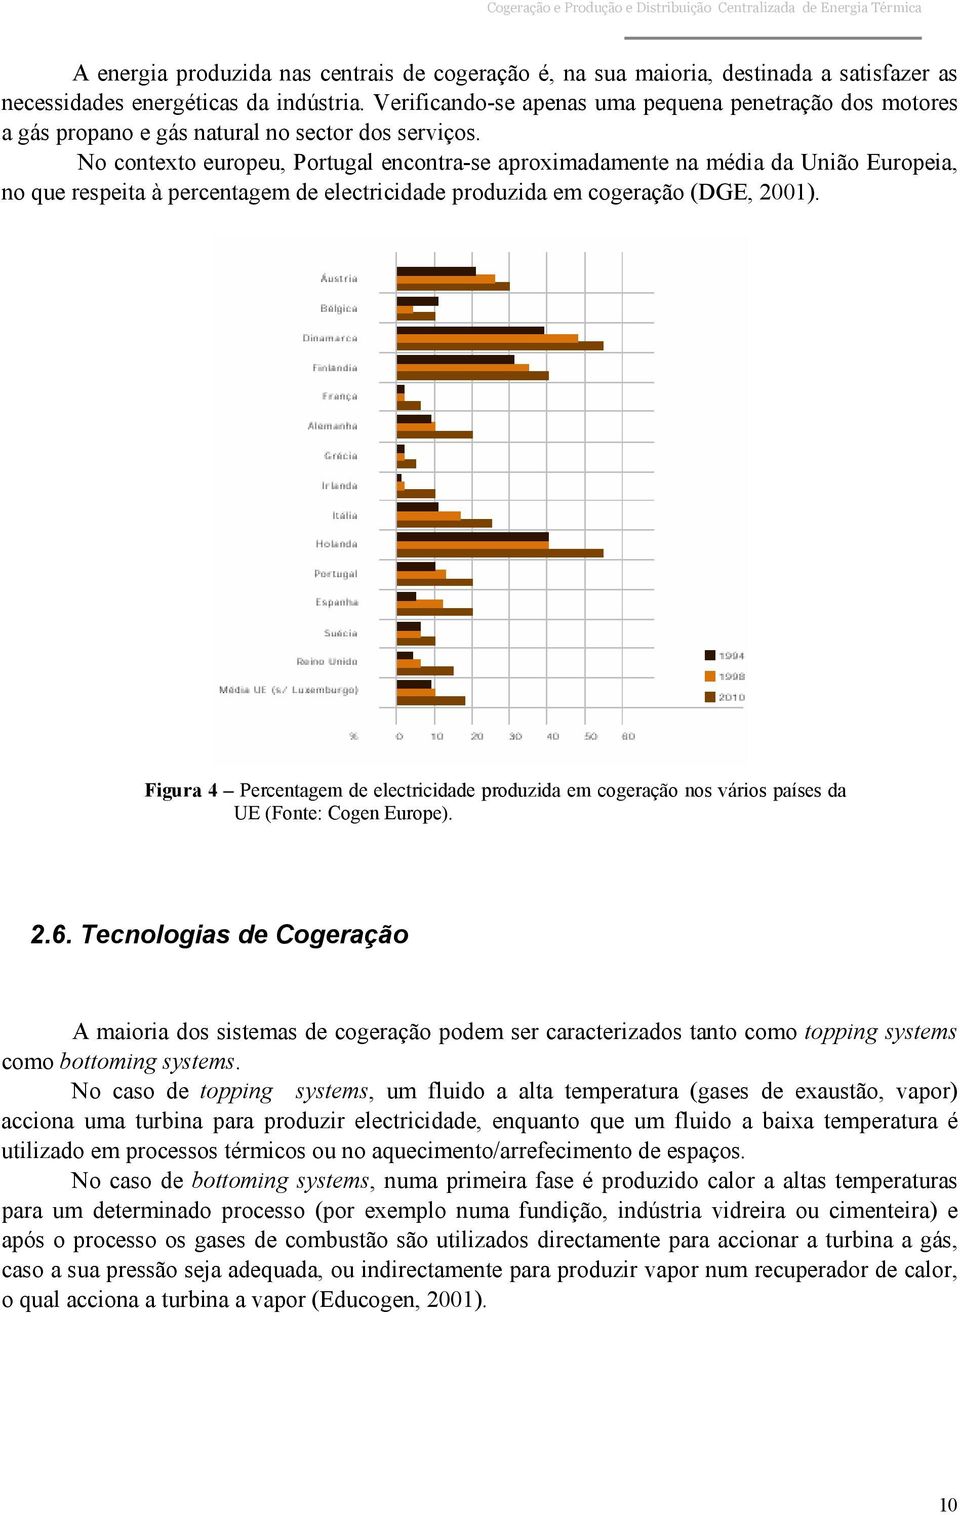 No contexto europeu, Portugal encontra-se aproximadamente na média da União Europeia, no que respeita à percentagem de electricidade produzida em cogeração (DGE, 2001).